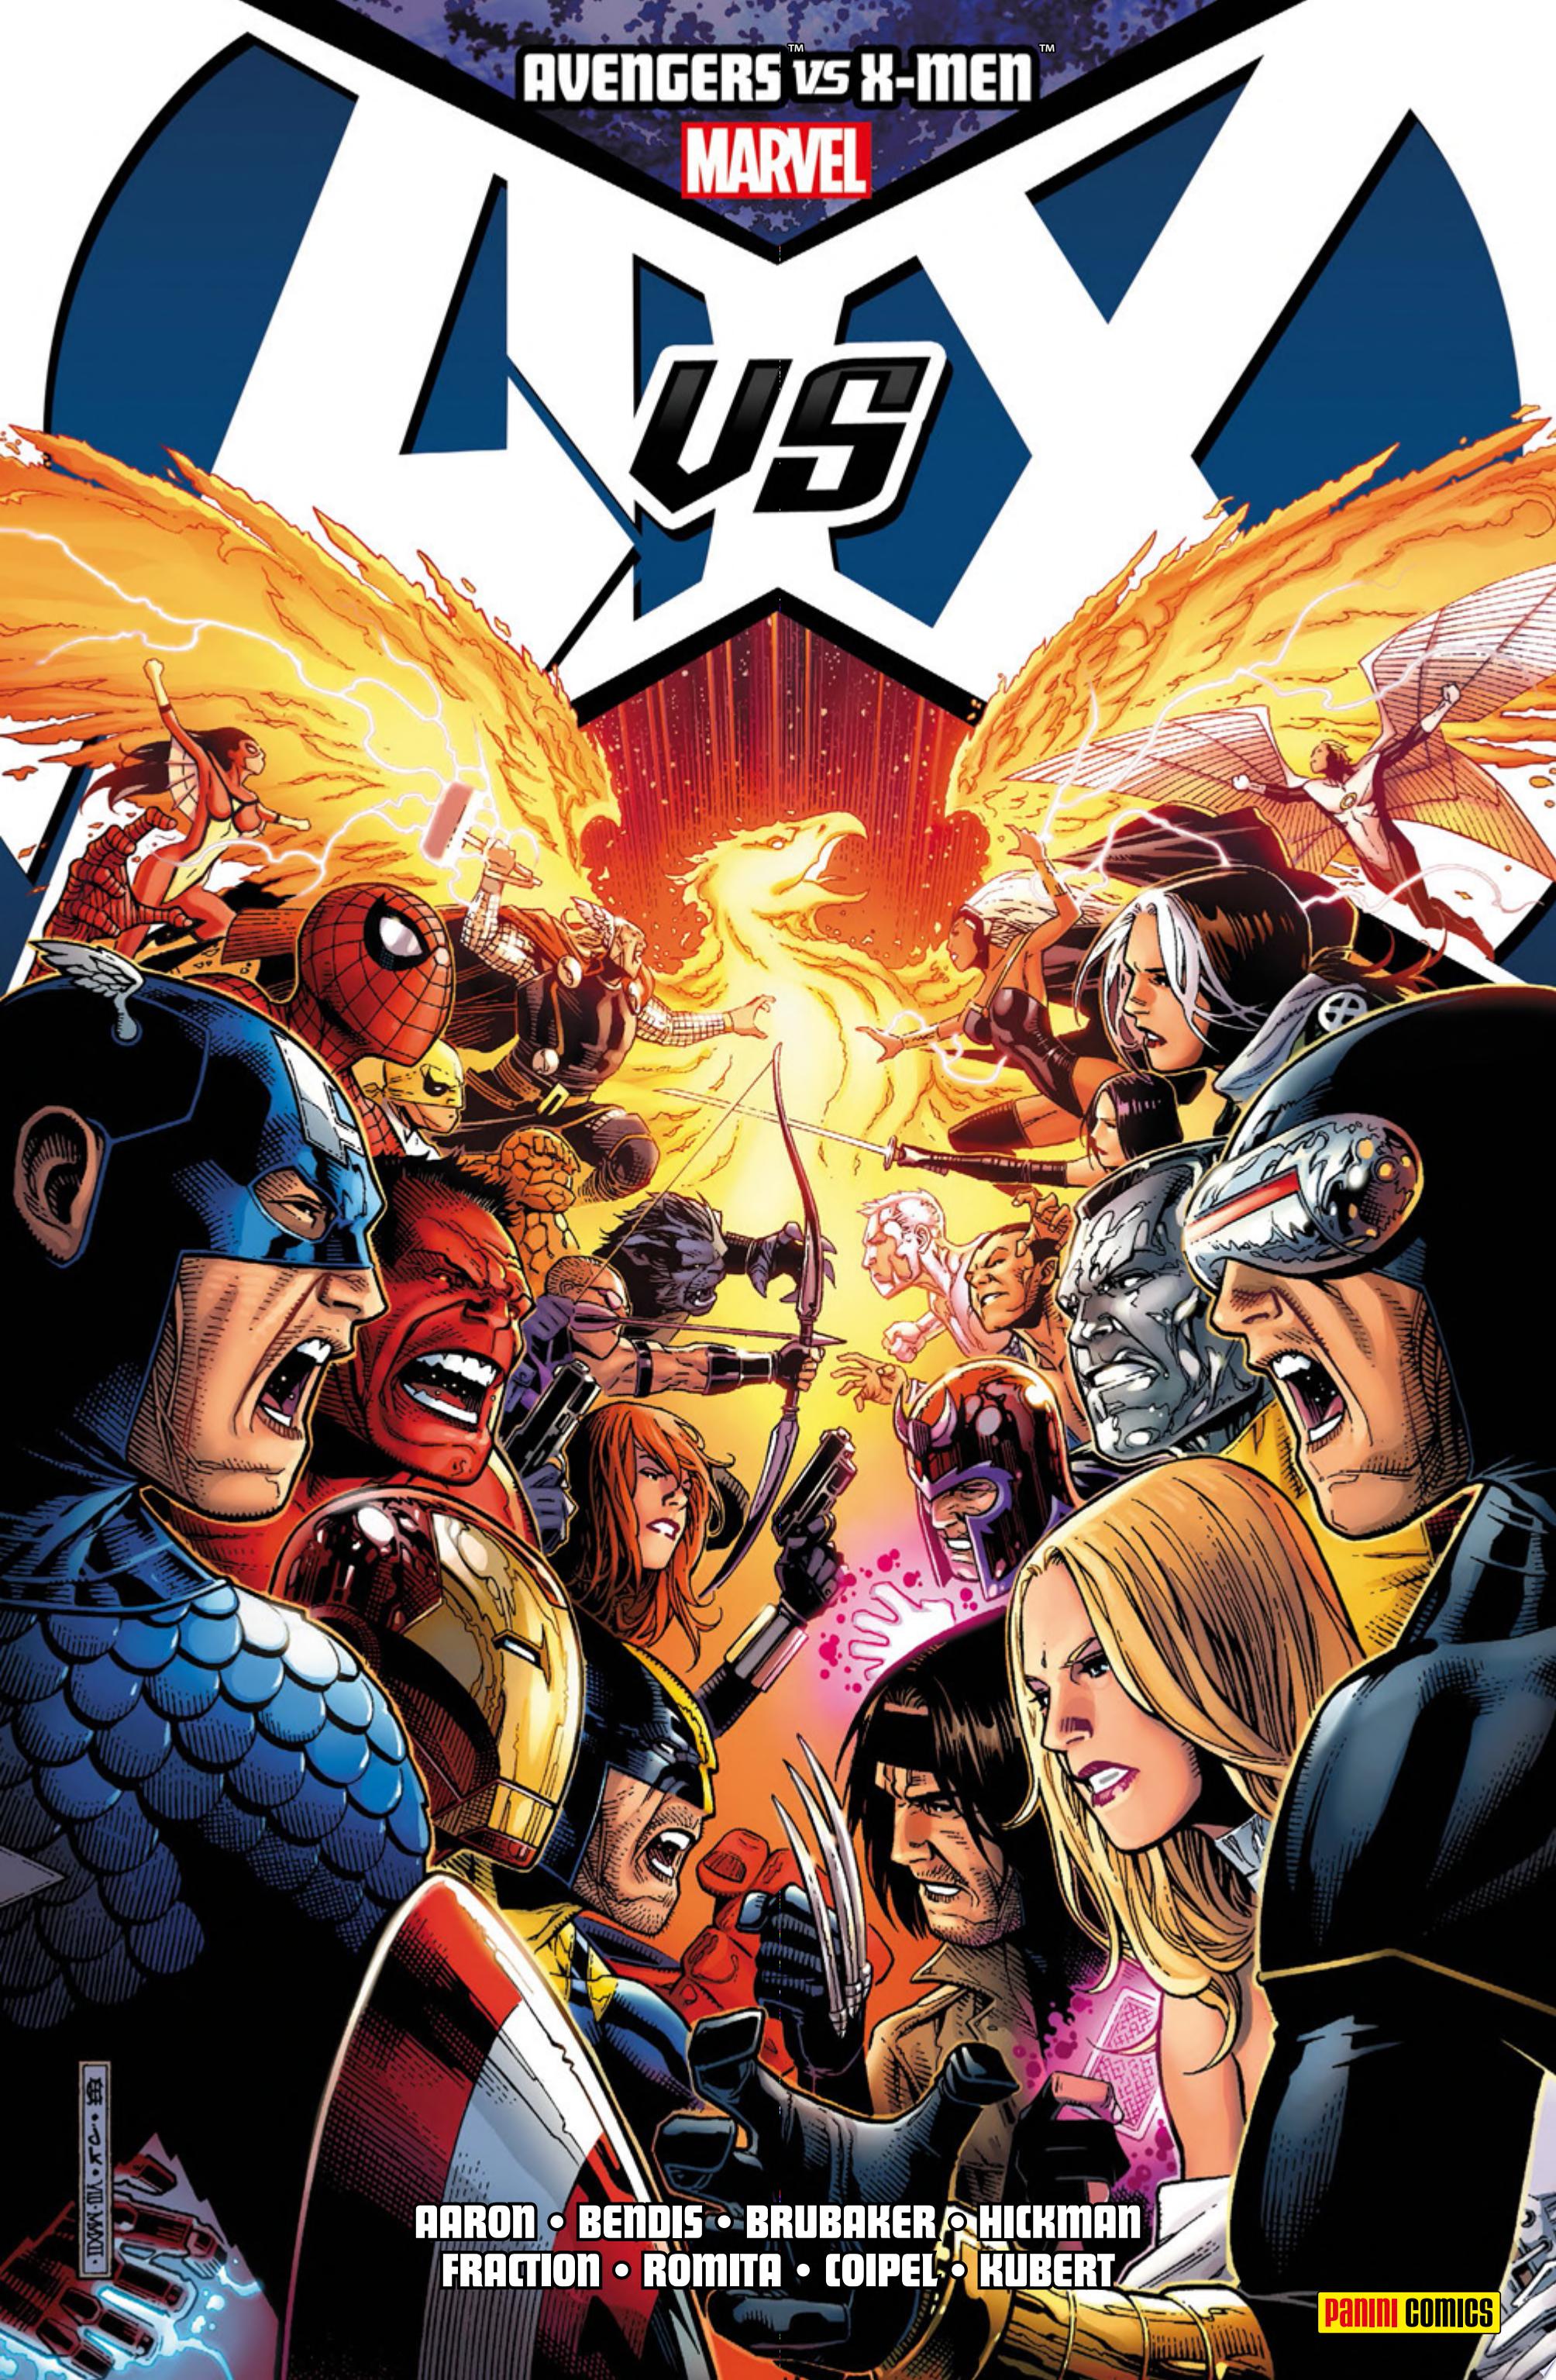 Image for "Avengers VS. X-Men"